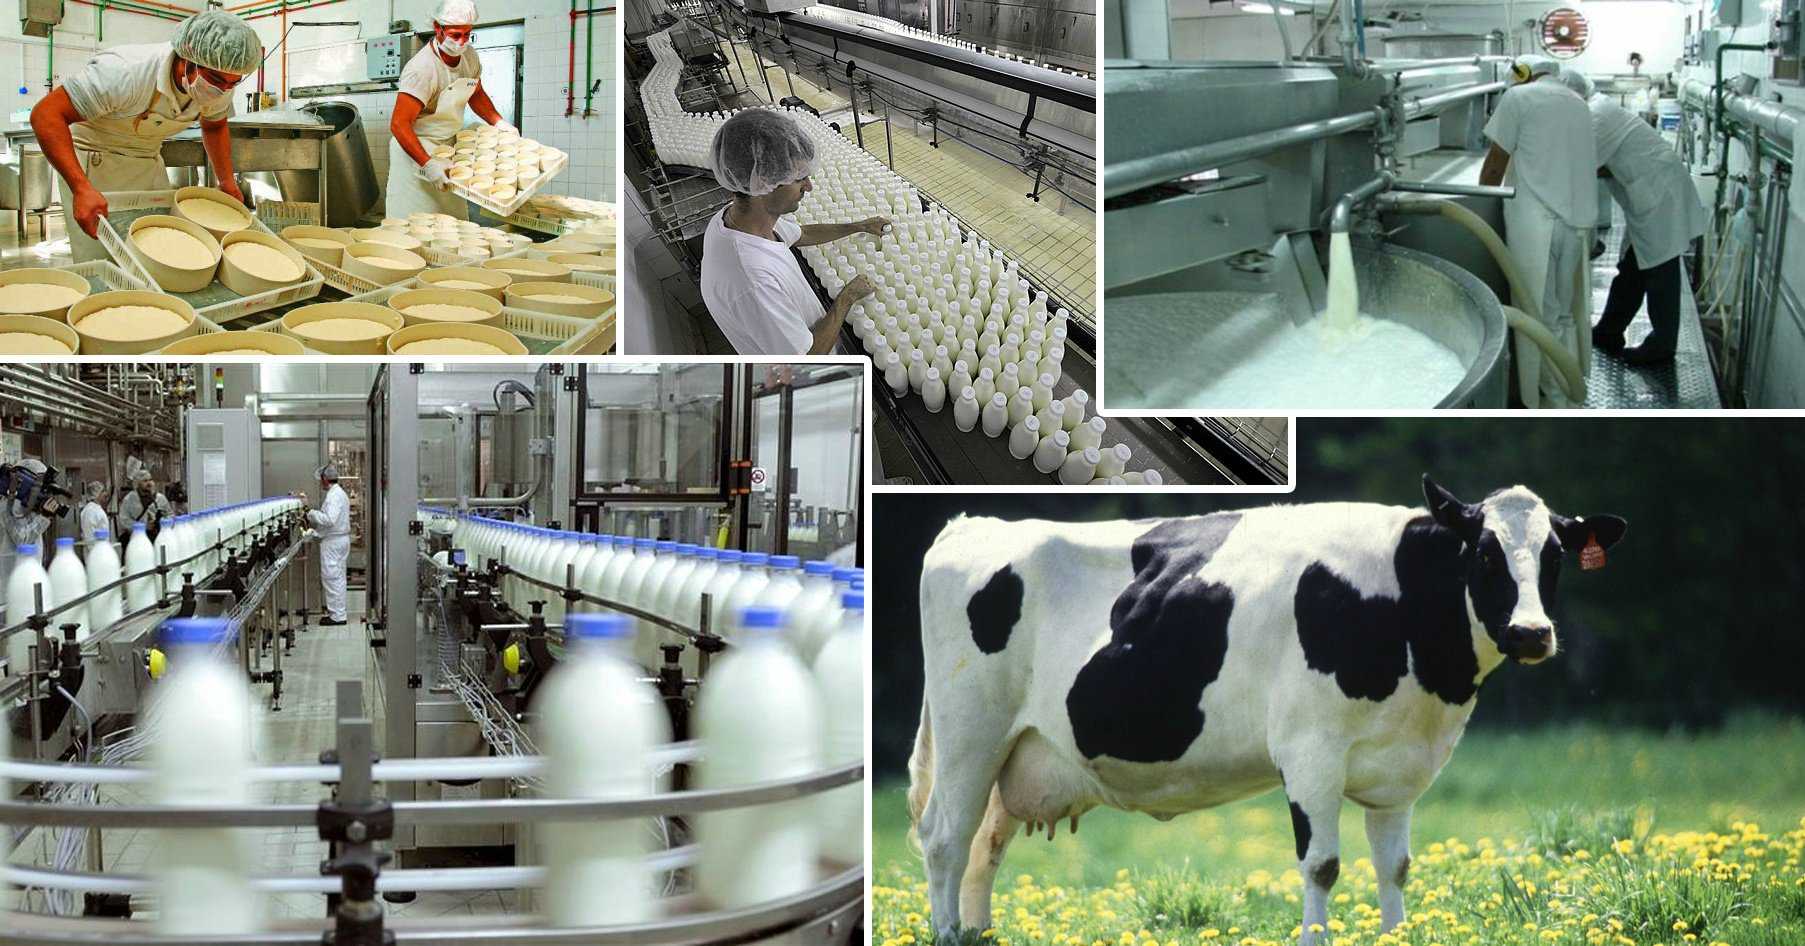 Технологии производства продукции животноводства